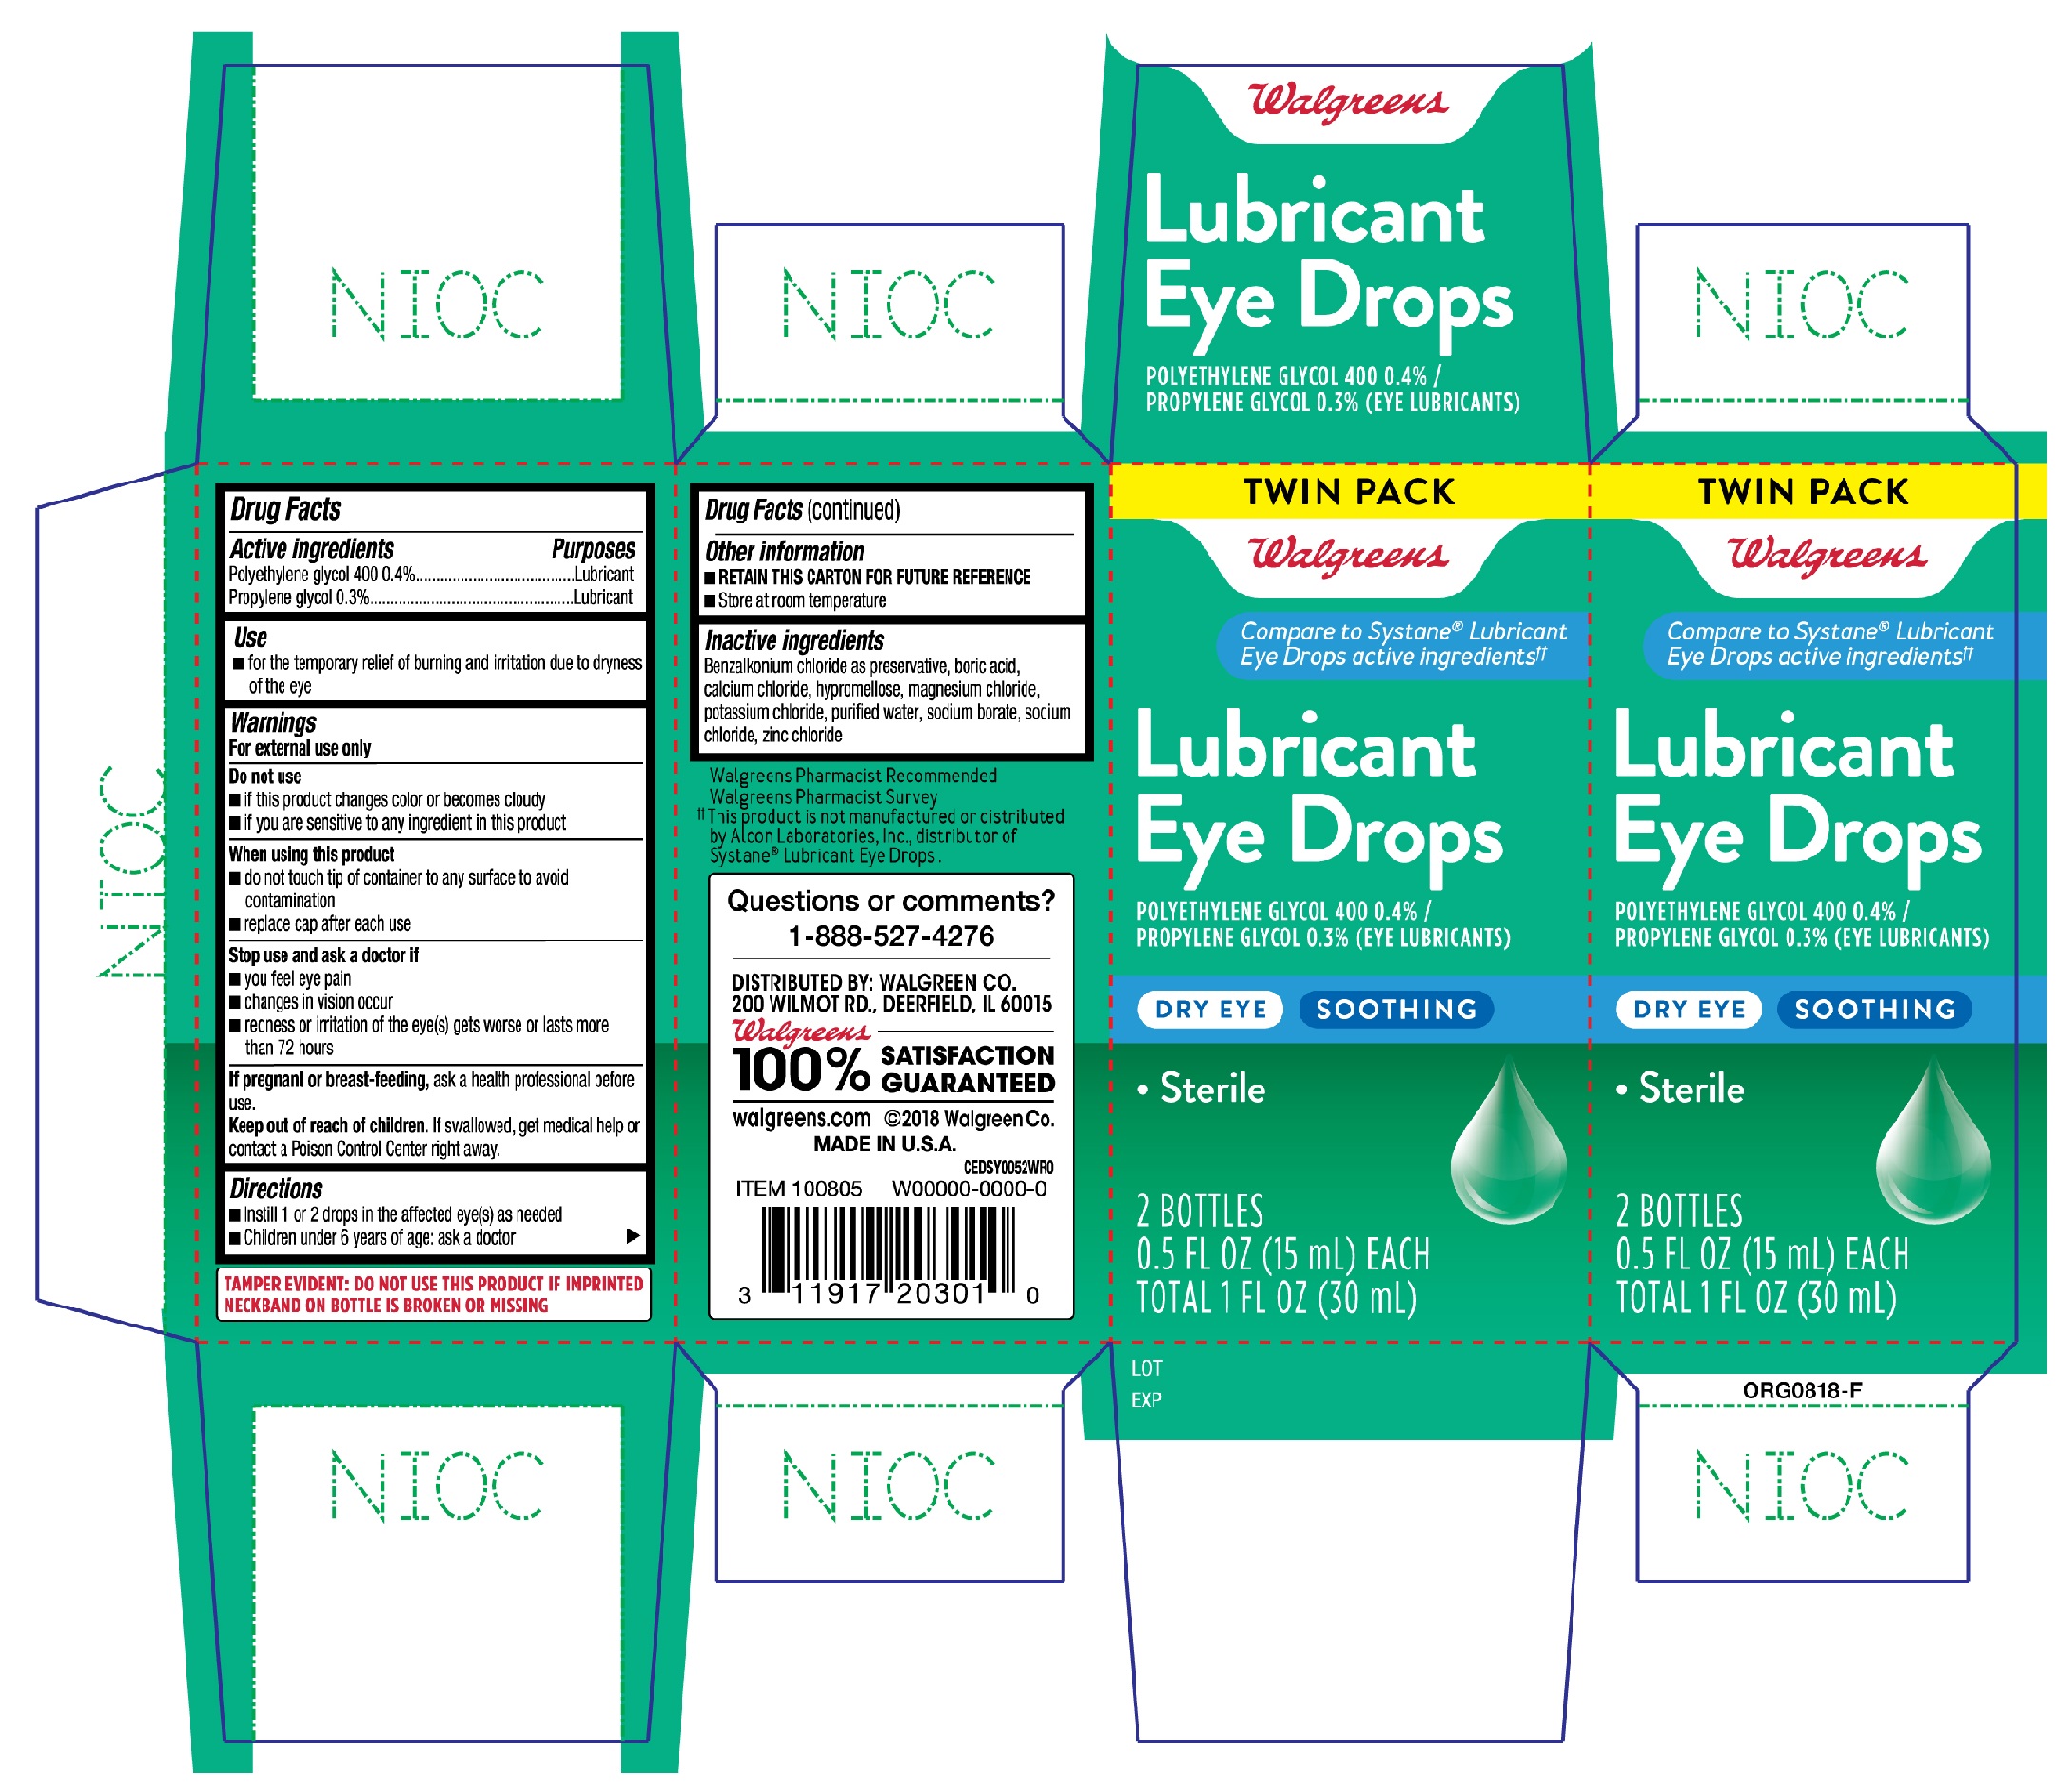 Walgreens Lubricant Eye Drops Dry Eye 15mL twin pack